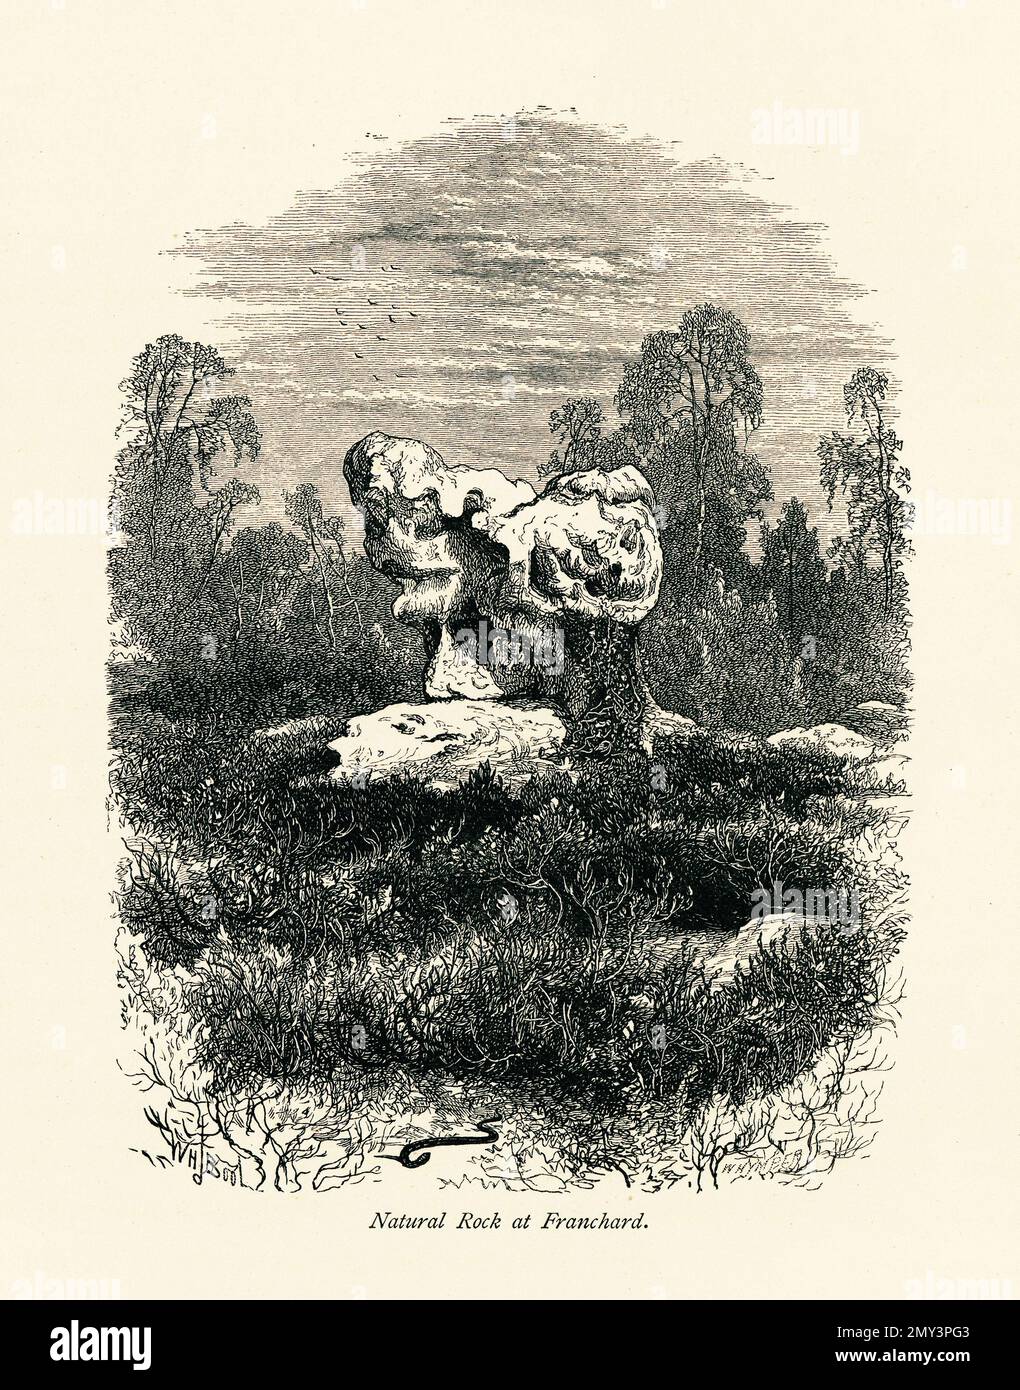 Antike Gravur einer natürlichen Felsformation in Franchard im Wald von Fontainebleau, Frankreich. Gravur im malerischen Europa, Vol. II Stockfoto